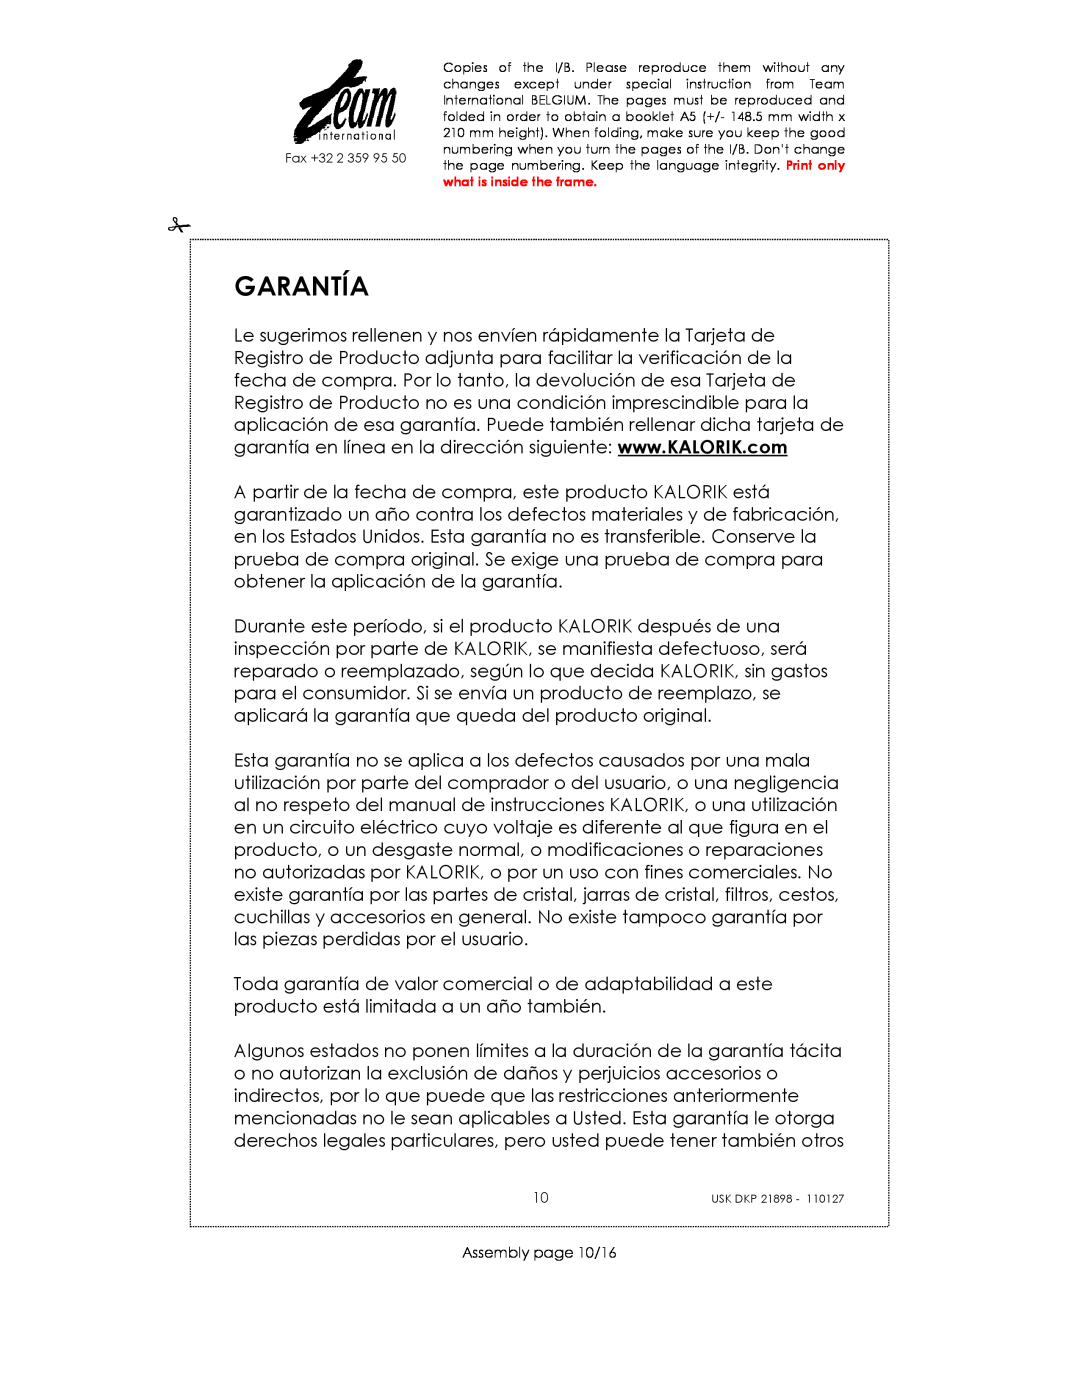 Kalorik USK DKP 21898 manual Garantía, Assembly page 10/16 